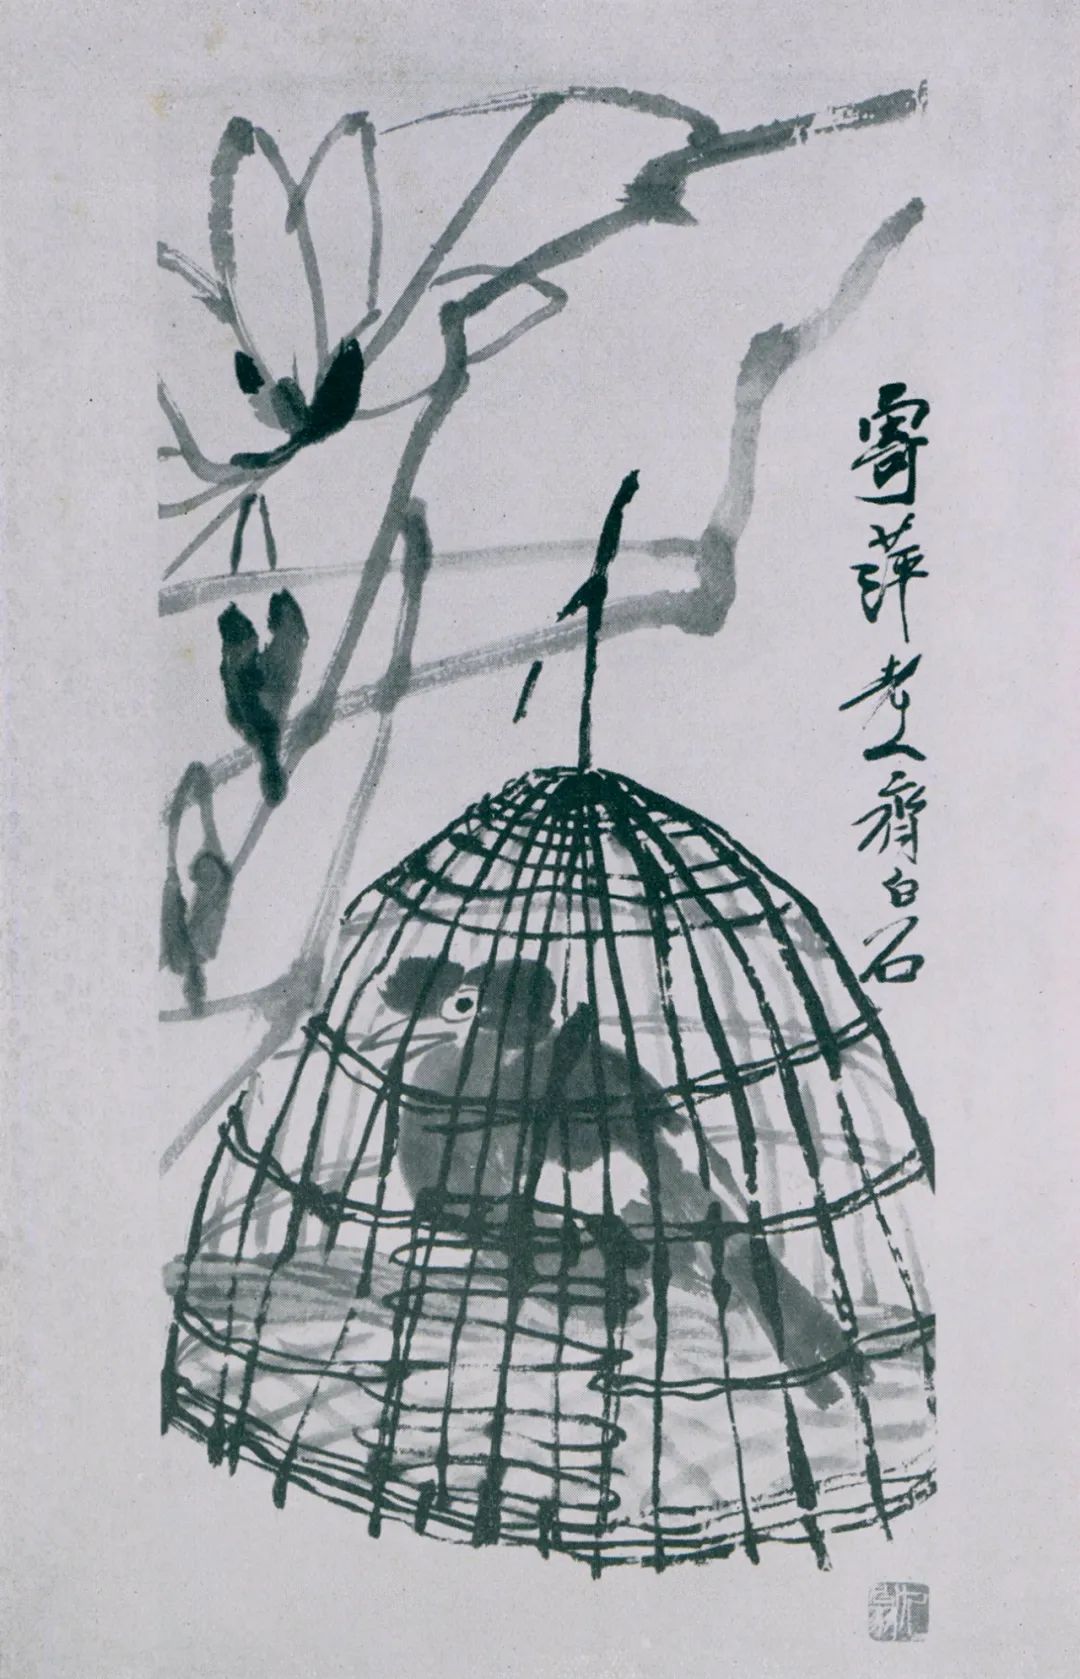 1950年在杜塞尔多夫“中国绘画展”中的齐白石作品《木兰八哥》。